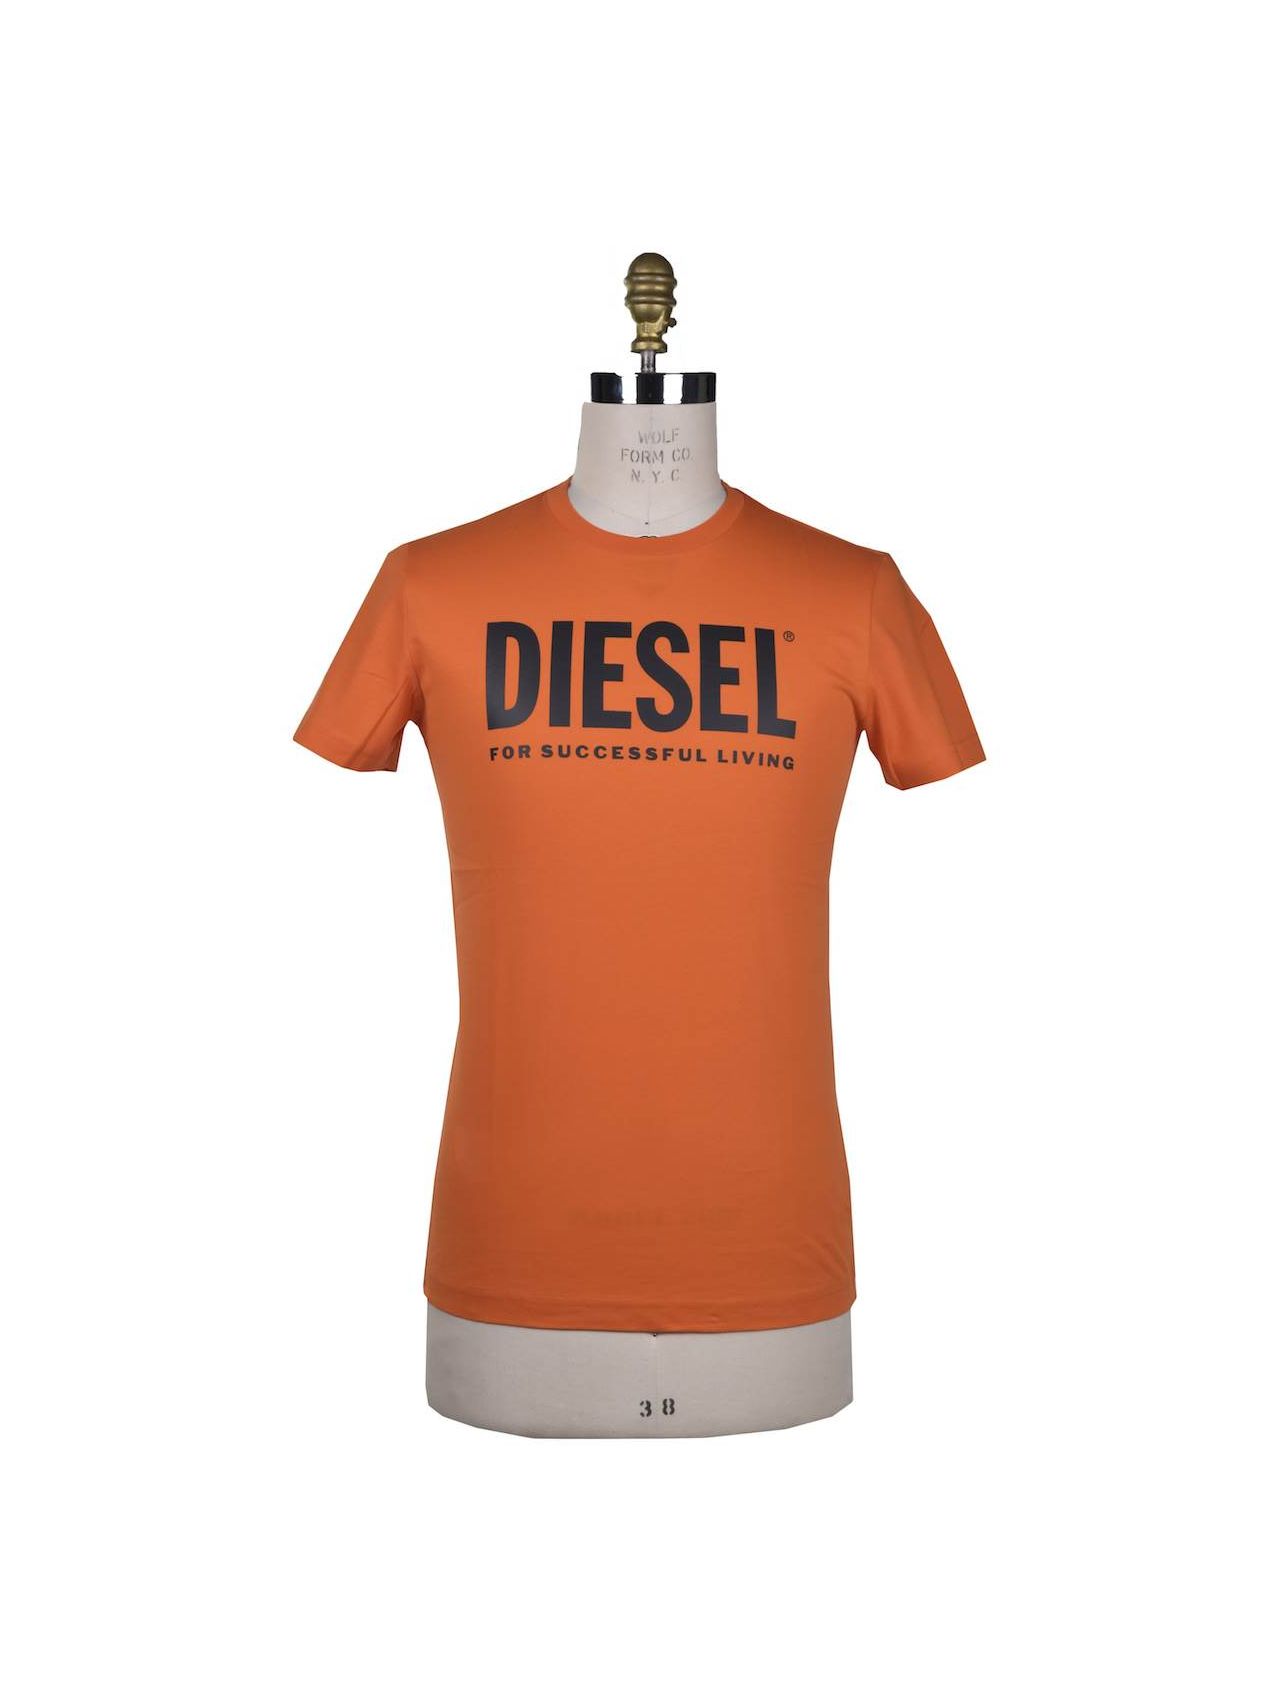 DIESEL Orange Cotton T-shirt T-DIEGO-LOGO | IsuiT